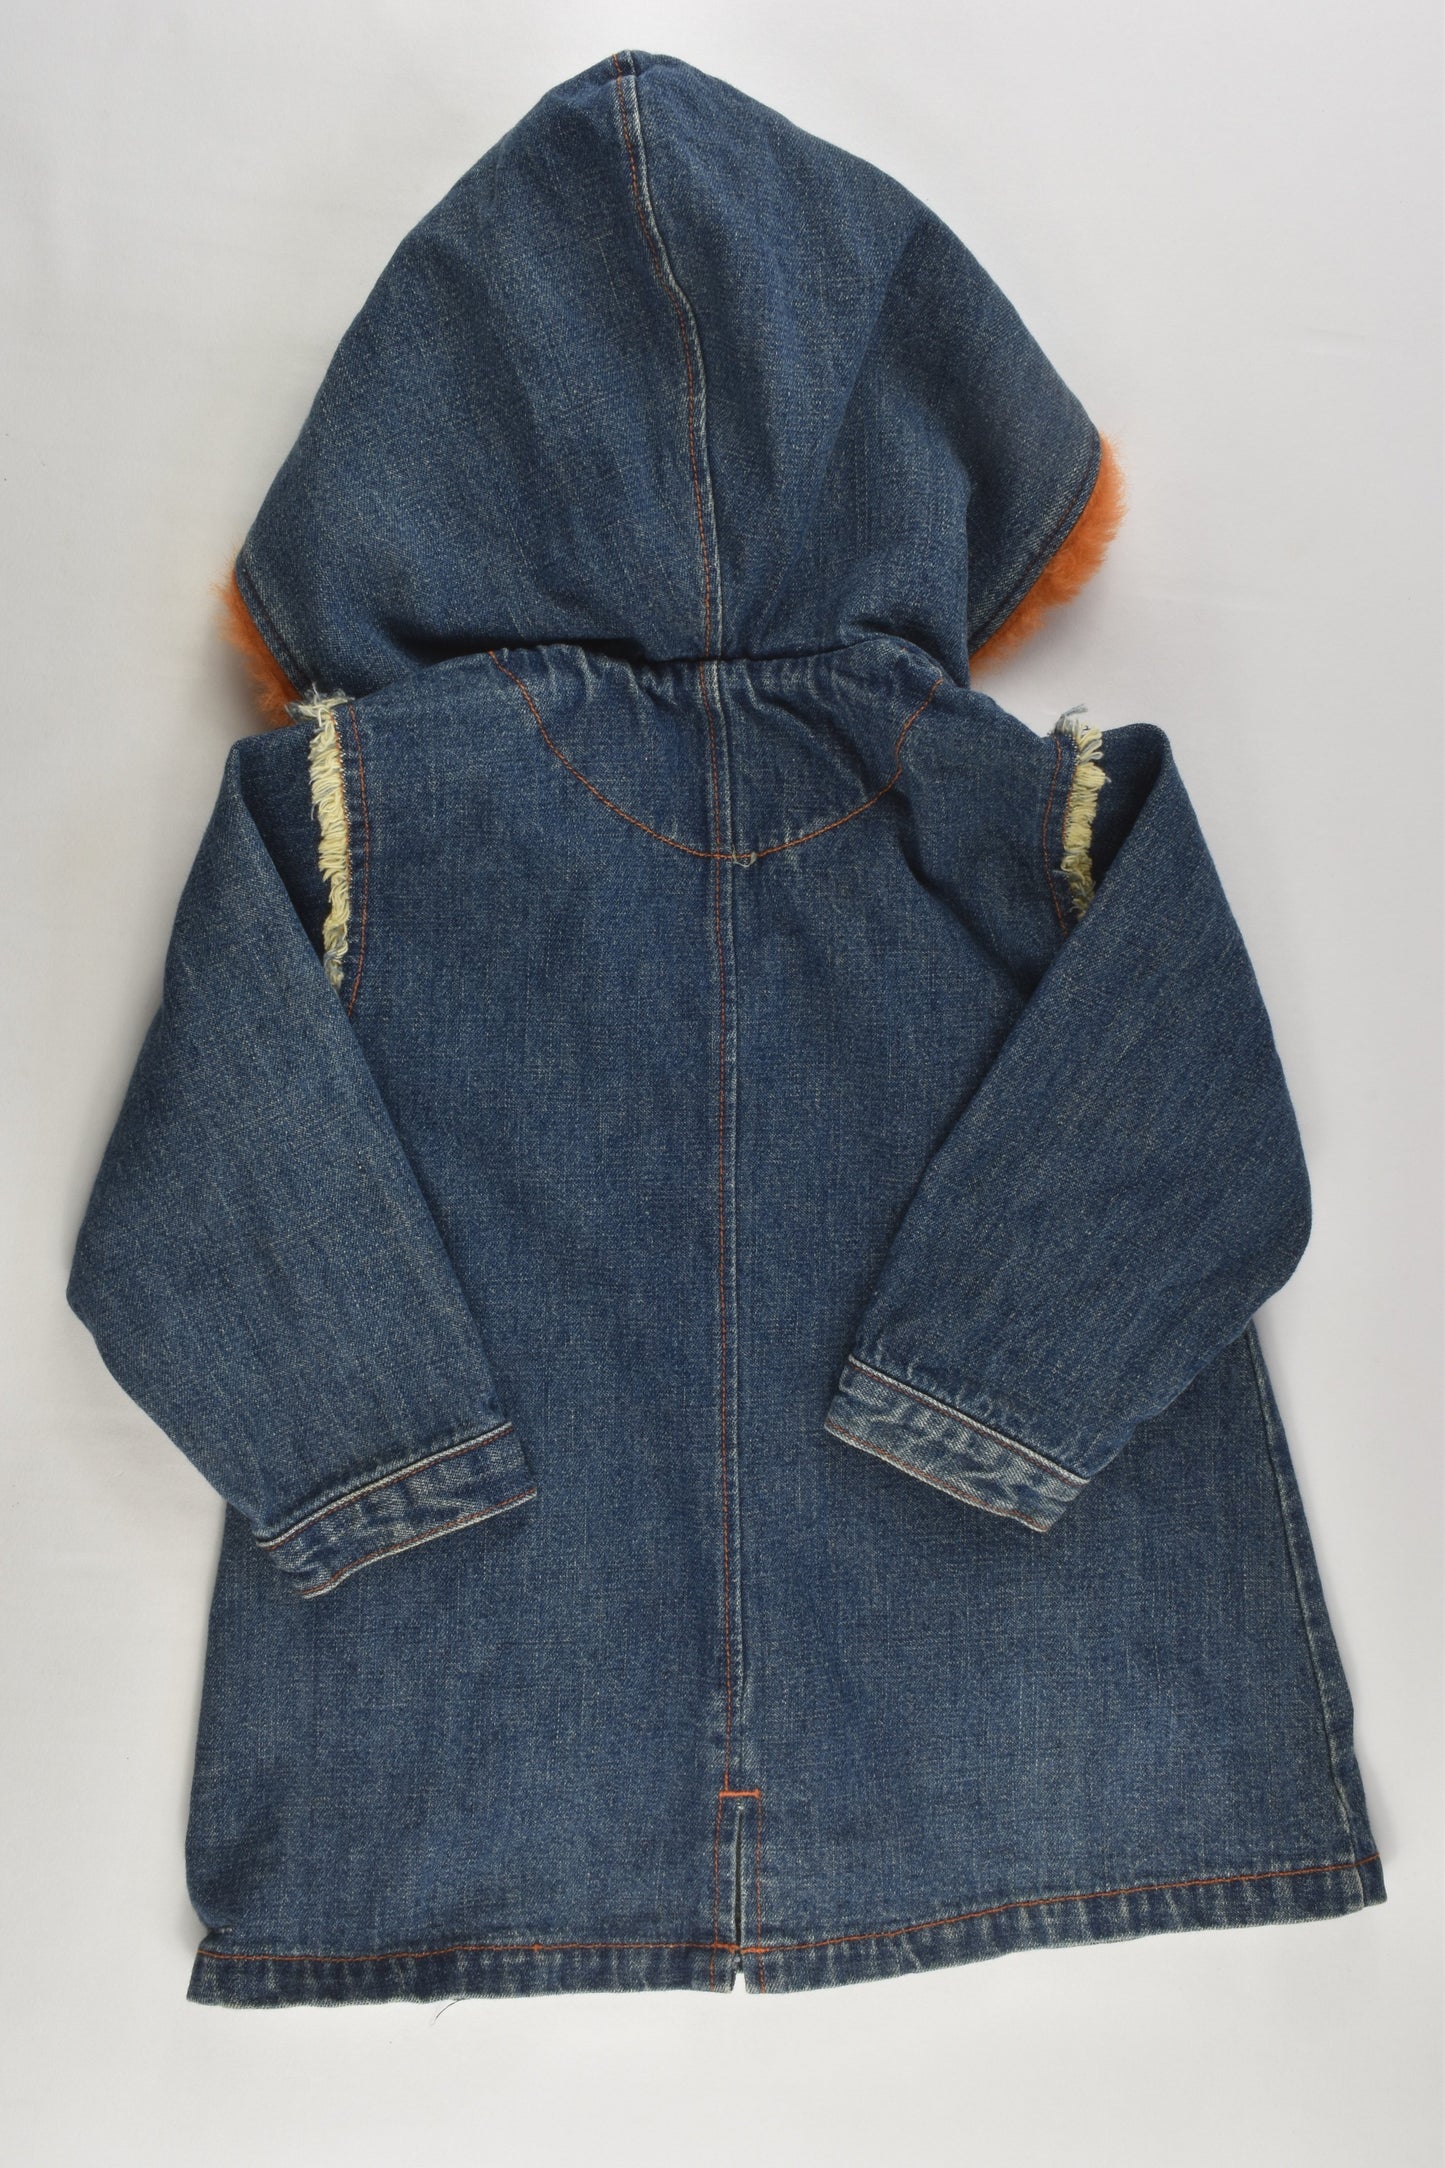 Guess Size 0 (12 months) Fluffy Hood Denim Jacket